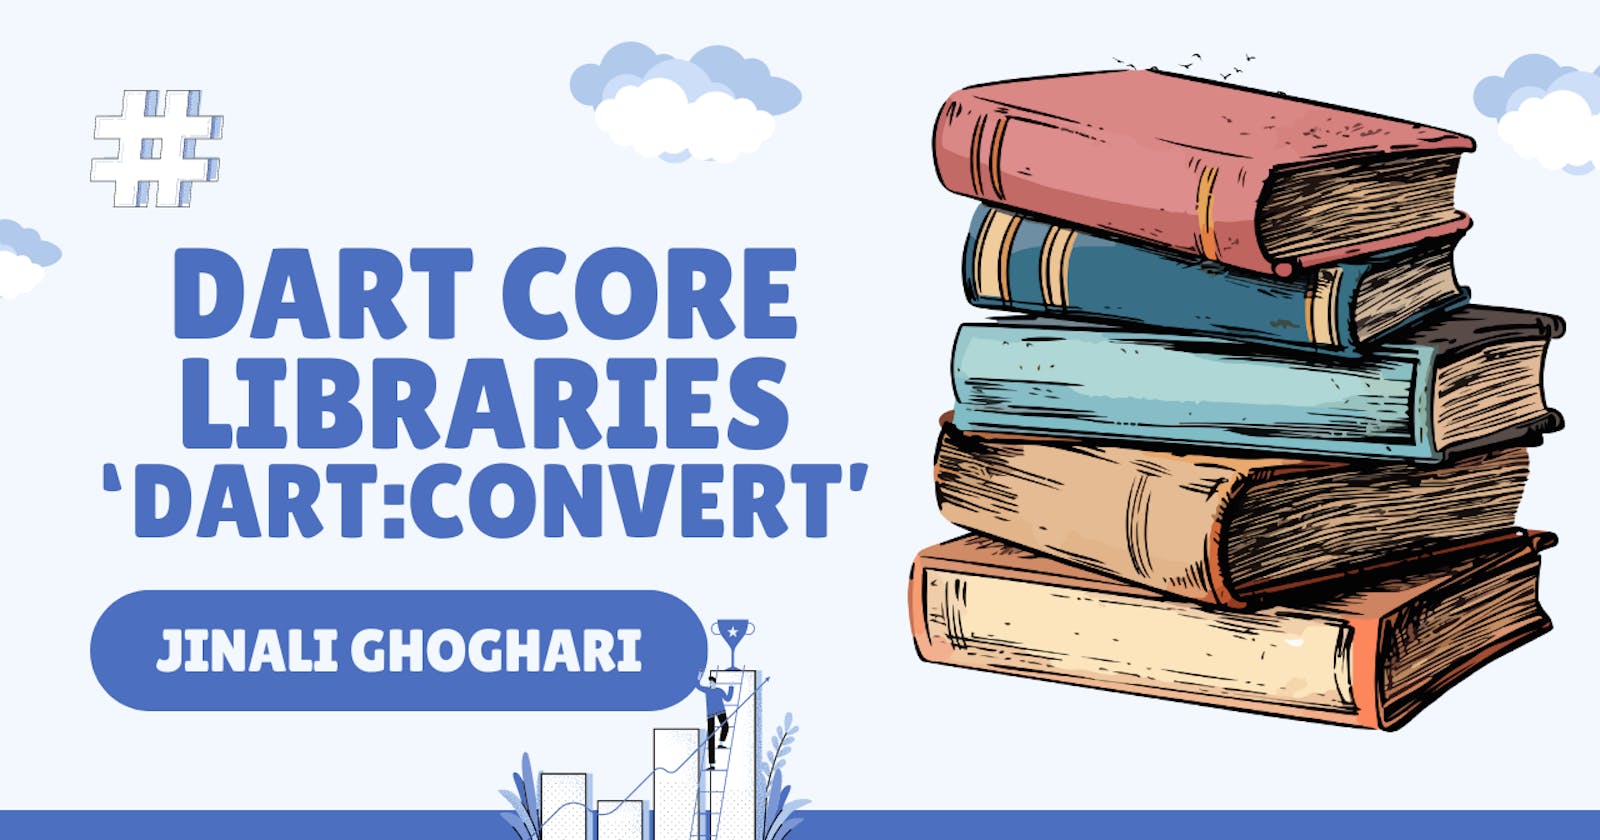 Dart Core Libraries 'dart:convert'